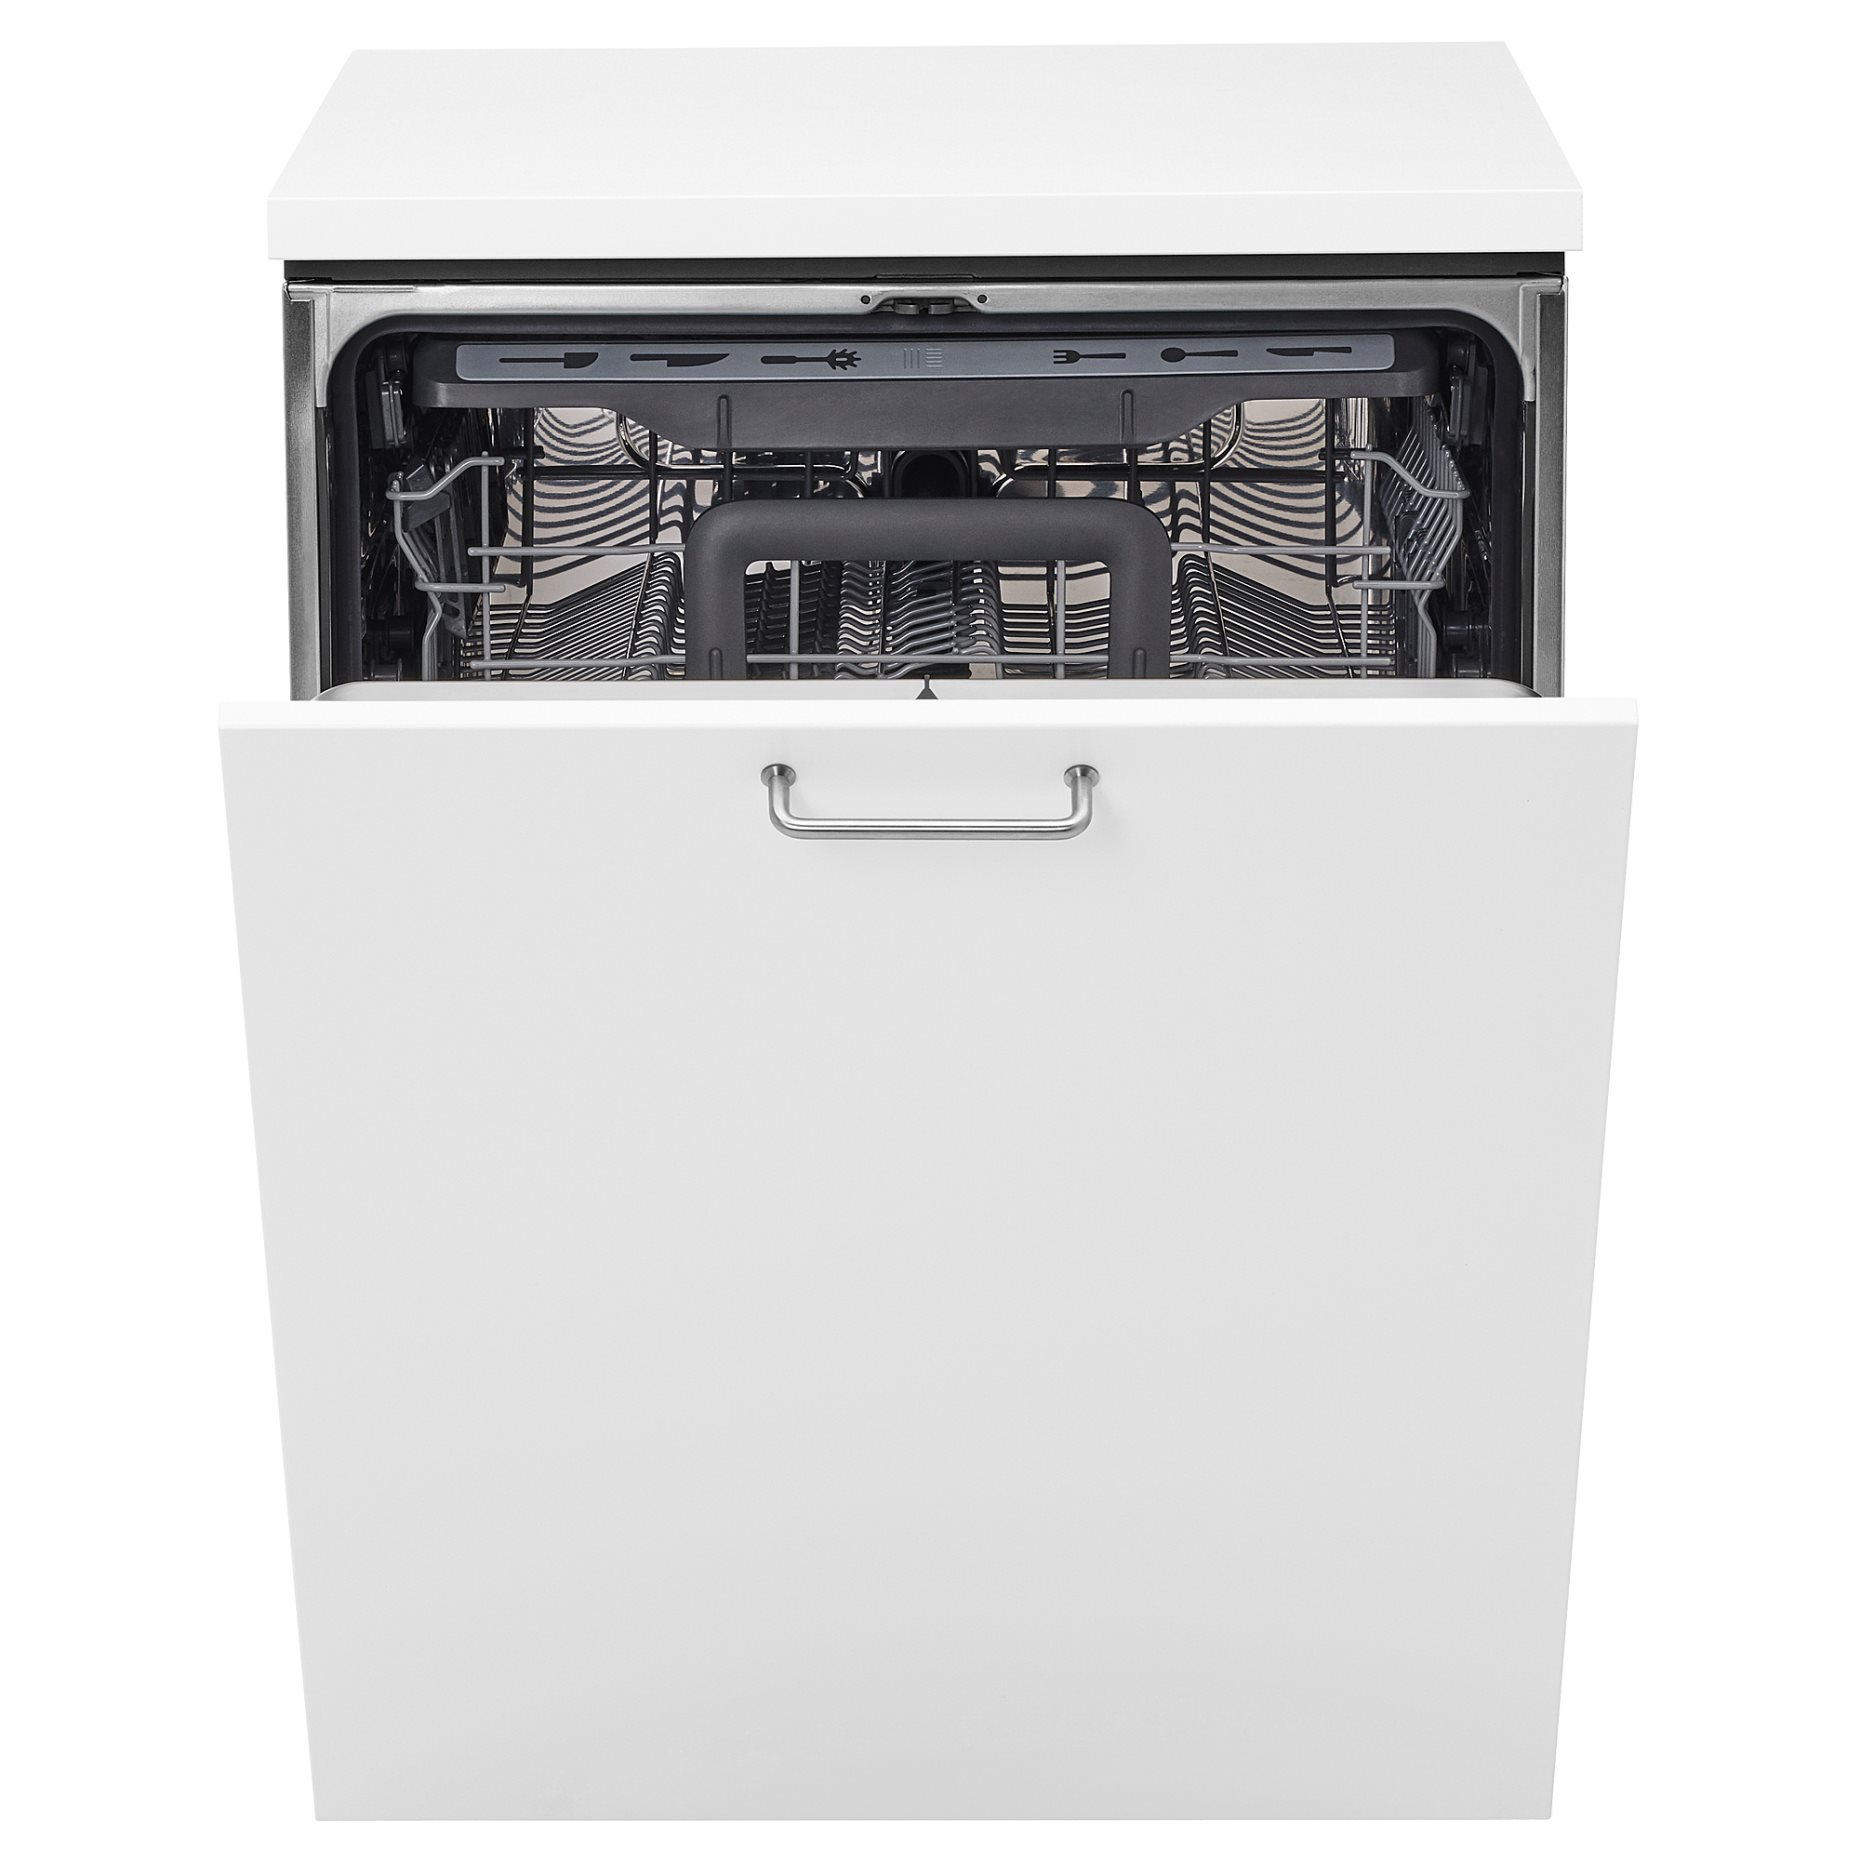 HYGIENISK, 500 integrated dishwasher, 60 cm, 804.756.12